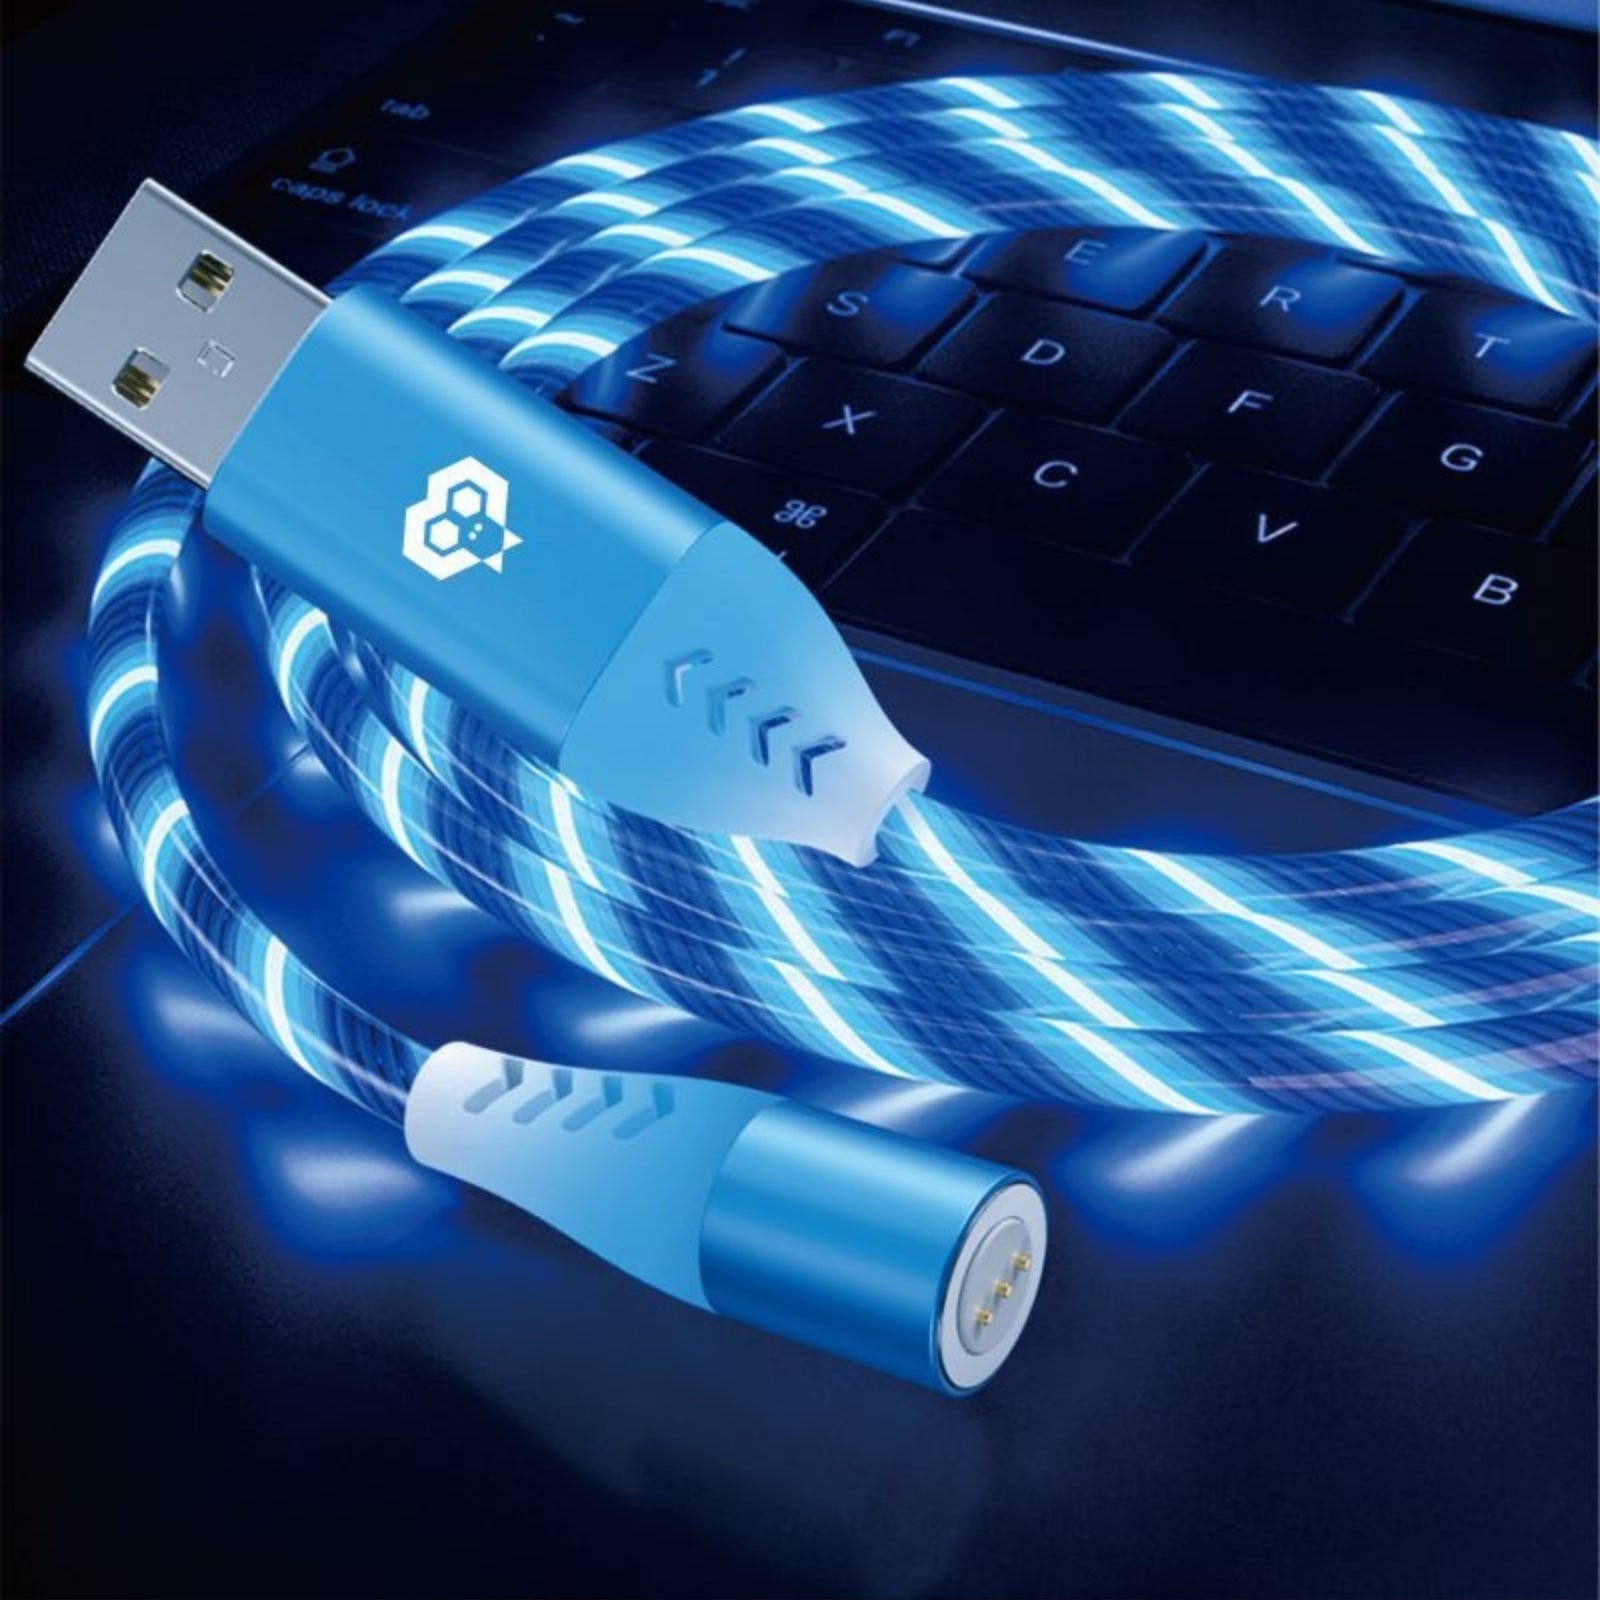 MonkeyTEC Câble de chargement magnétique 3 en 1 LED lumineux avec transfert de données pour iPhone / Micro USB / USB C PC-MGT-36